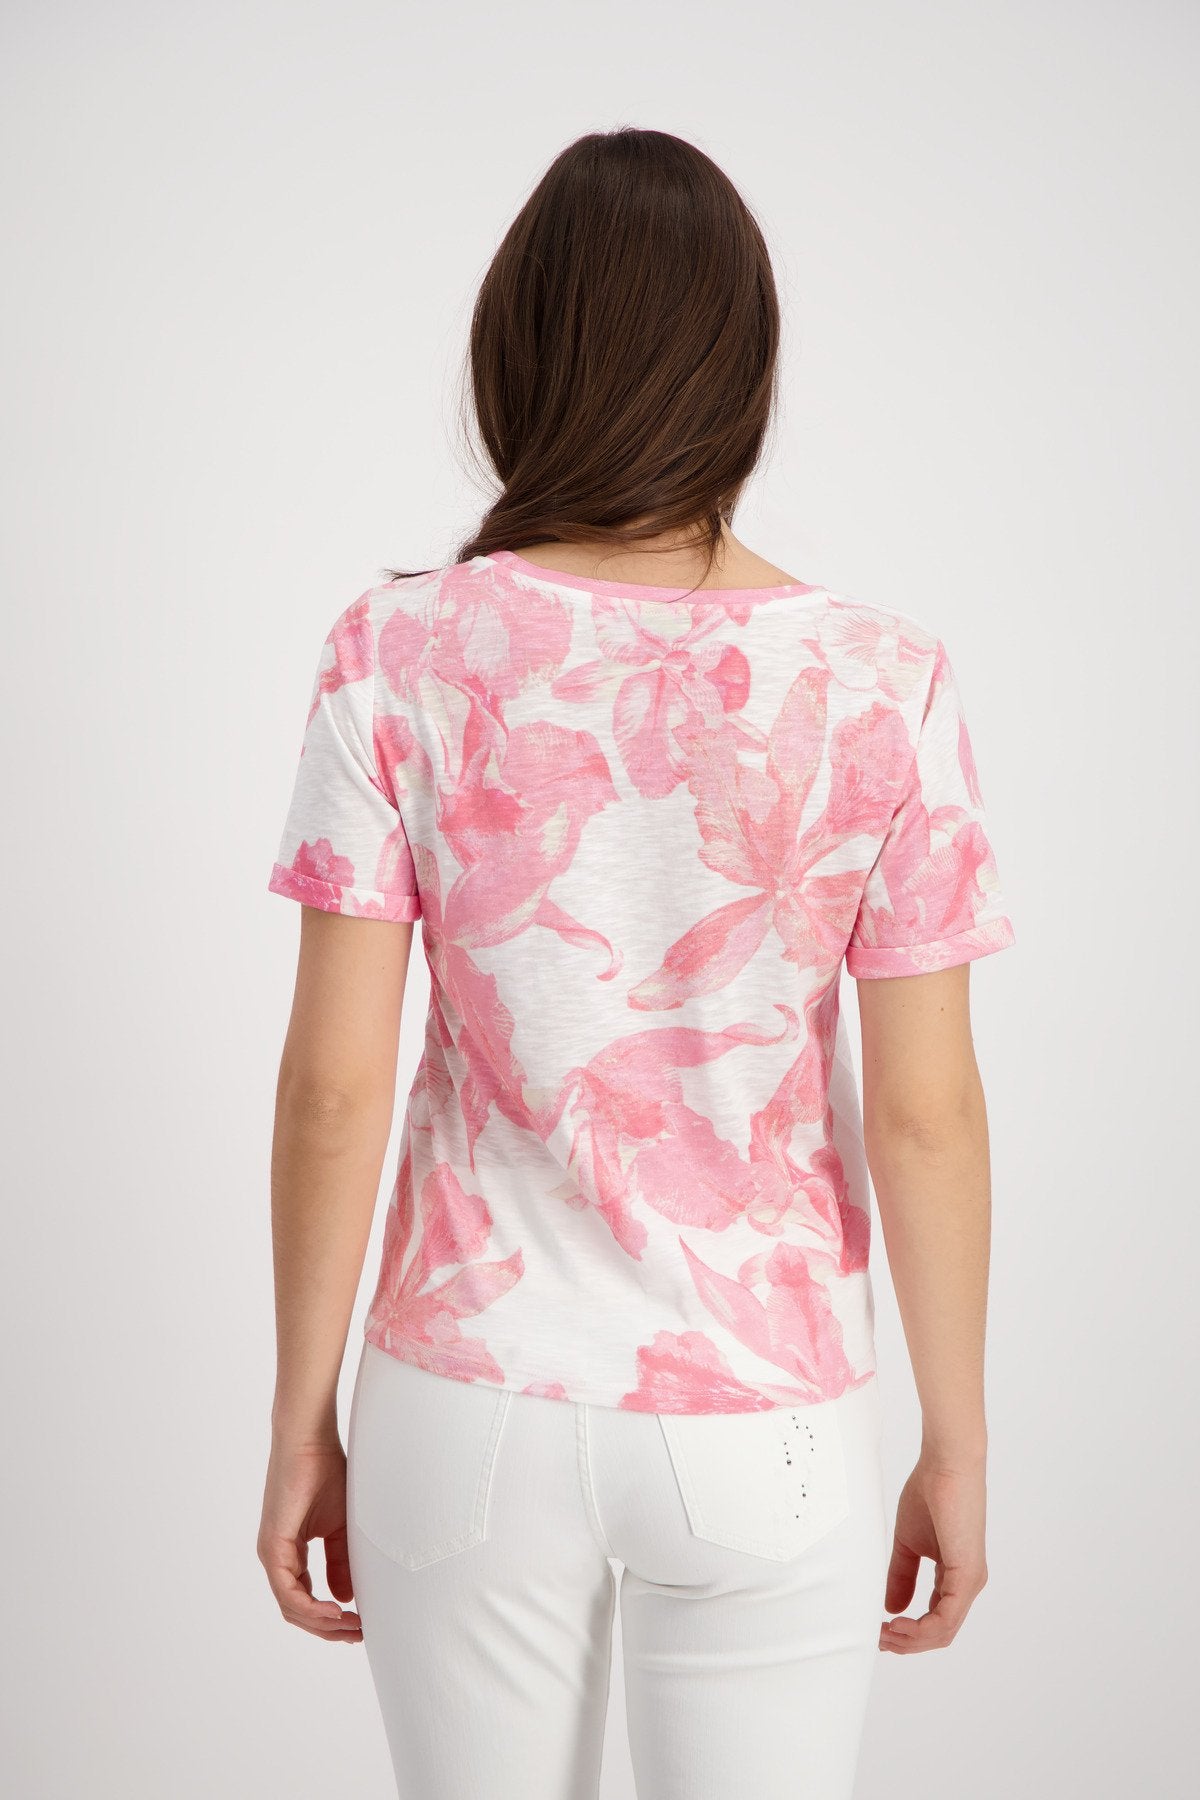 T-Shirt (Pink Smoothie Ge)